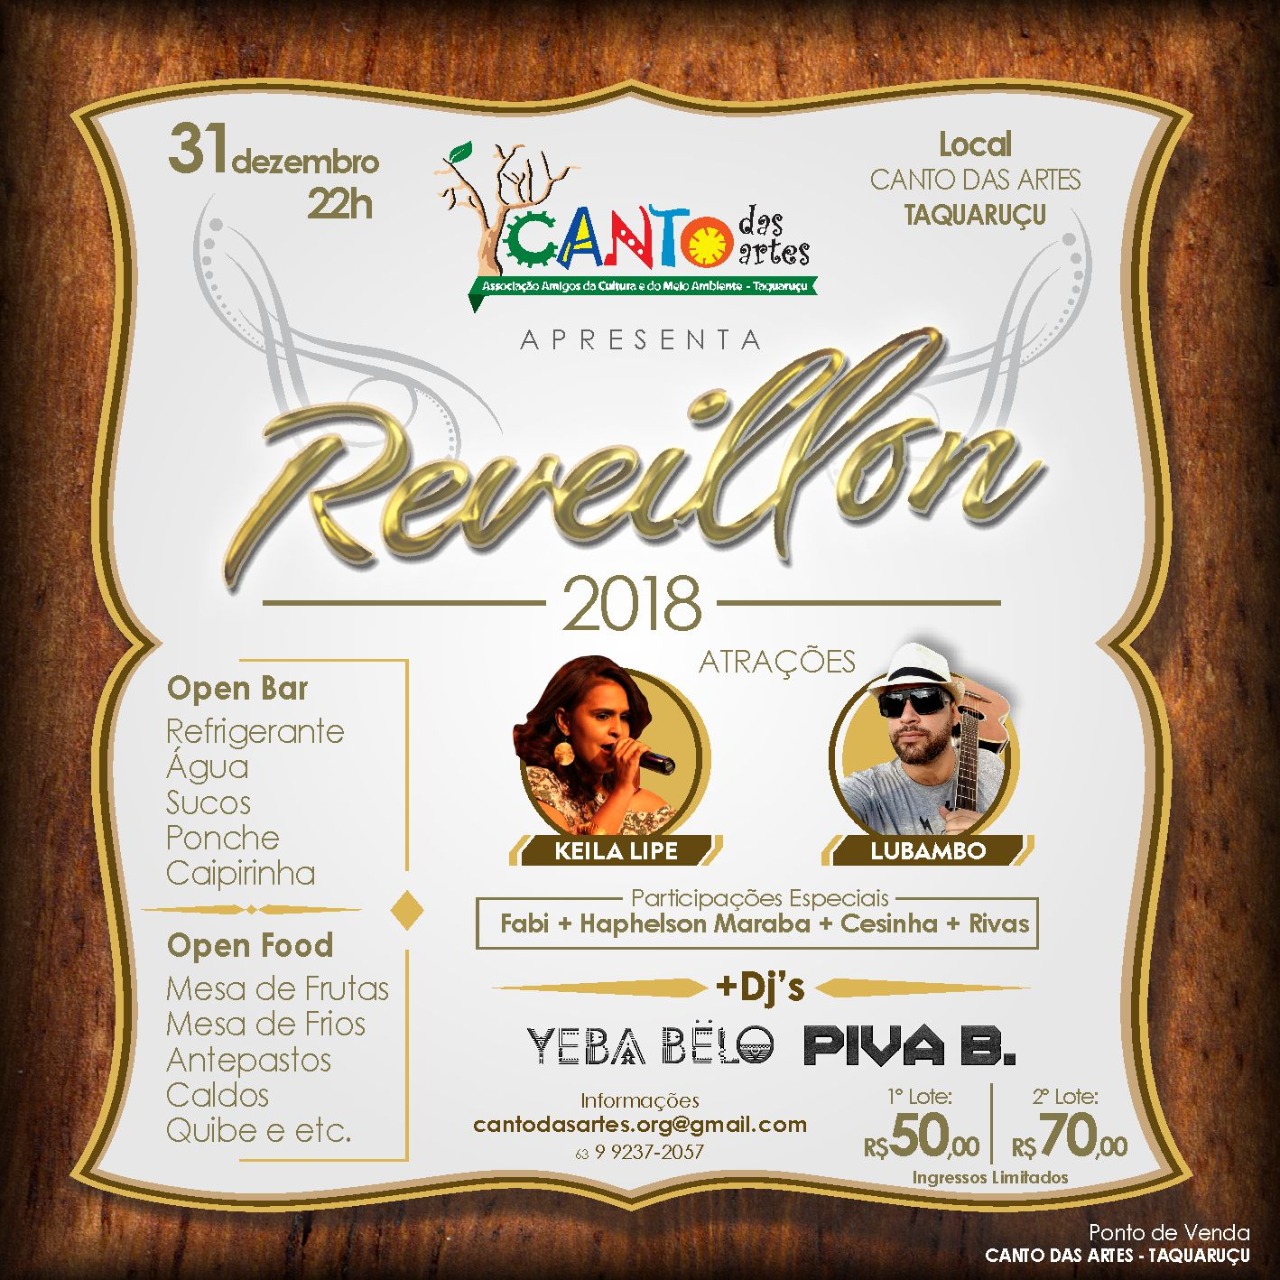 RéVEILLON 2018 - Canto das Artes - Taquaruçu